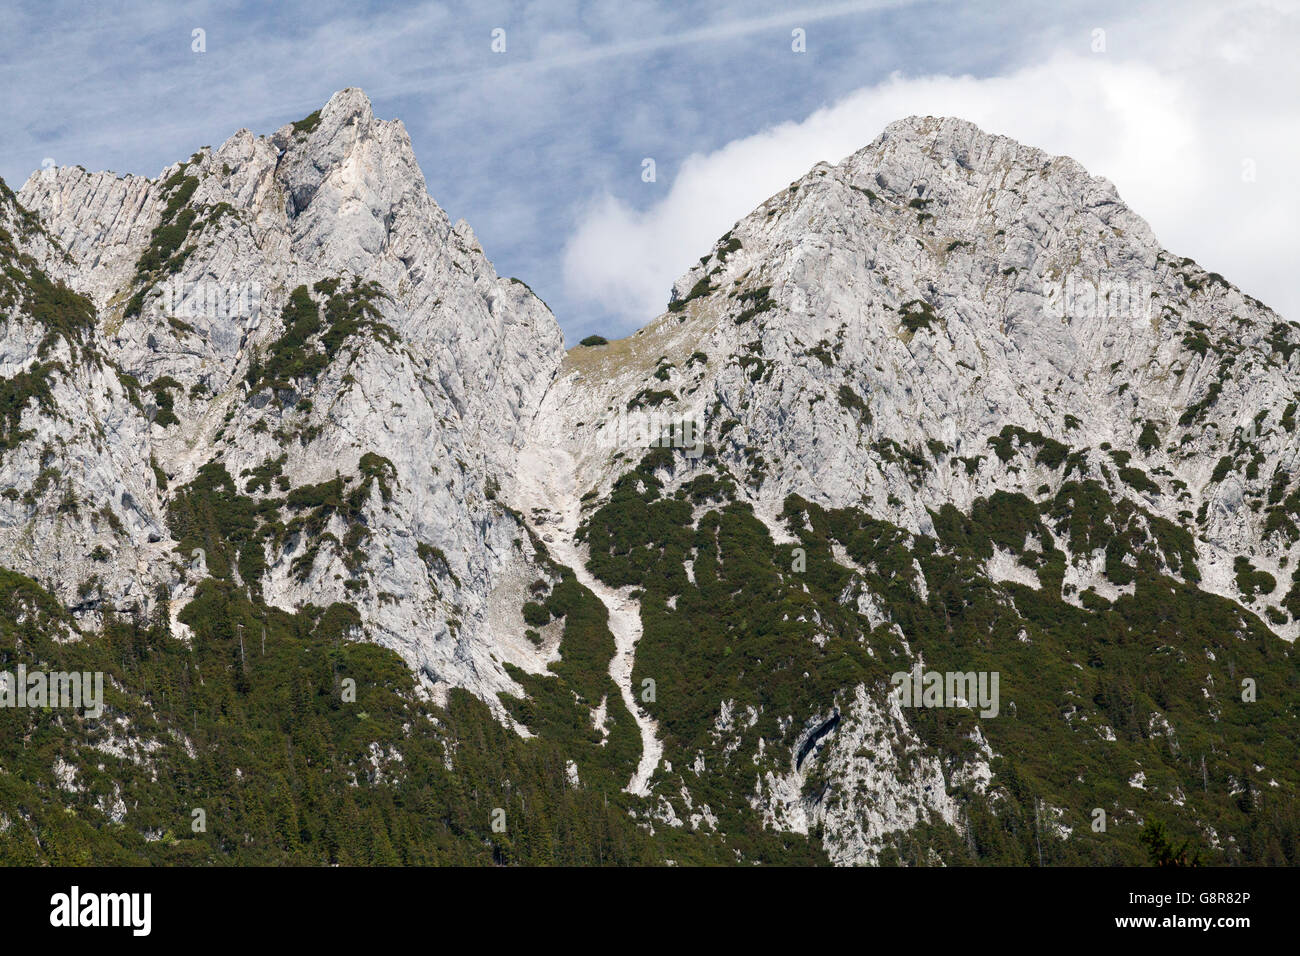 Wilder Kaiser mountains in the Austrian Tyrol. These limestone mountains reach over 2300 metres (7700 feet) Stock Photo